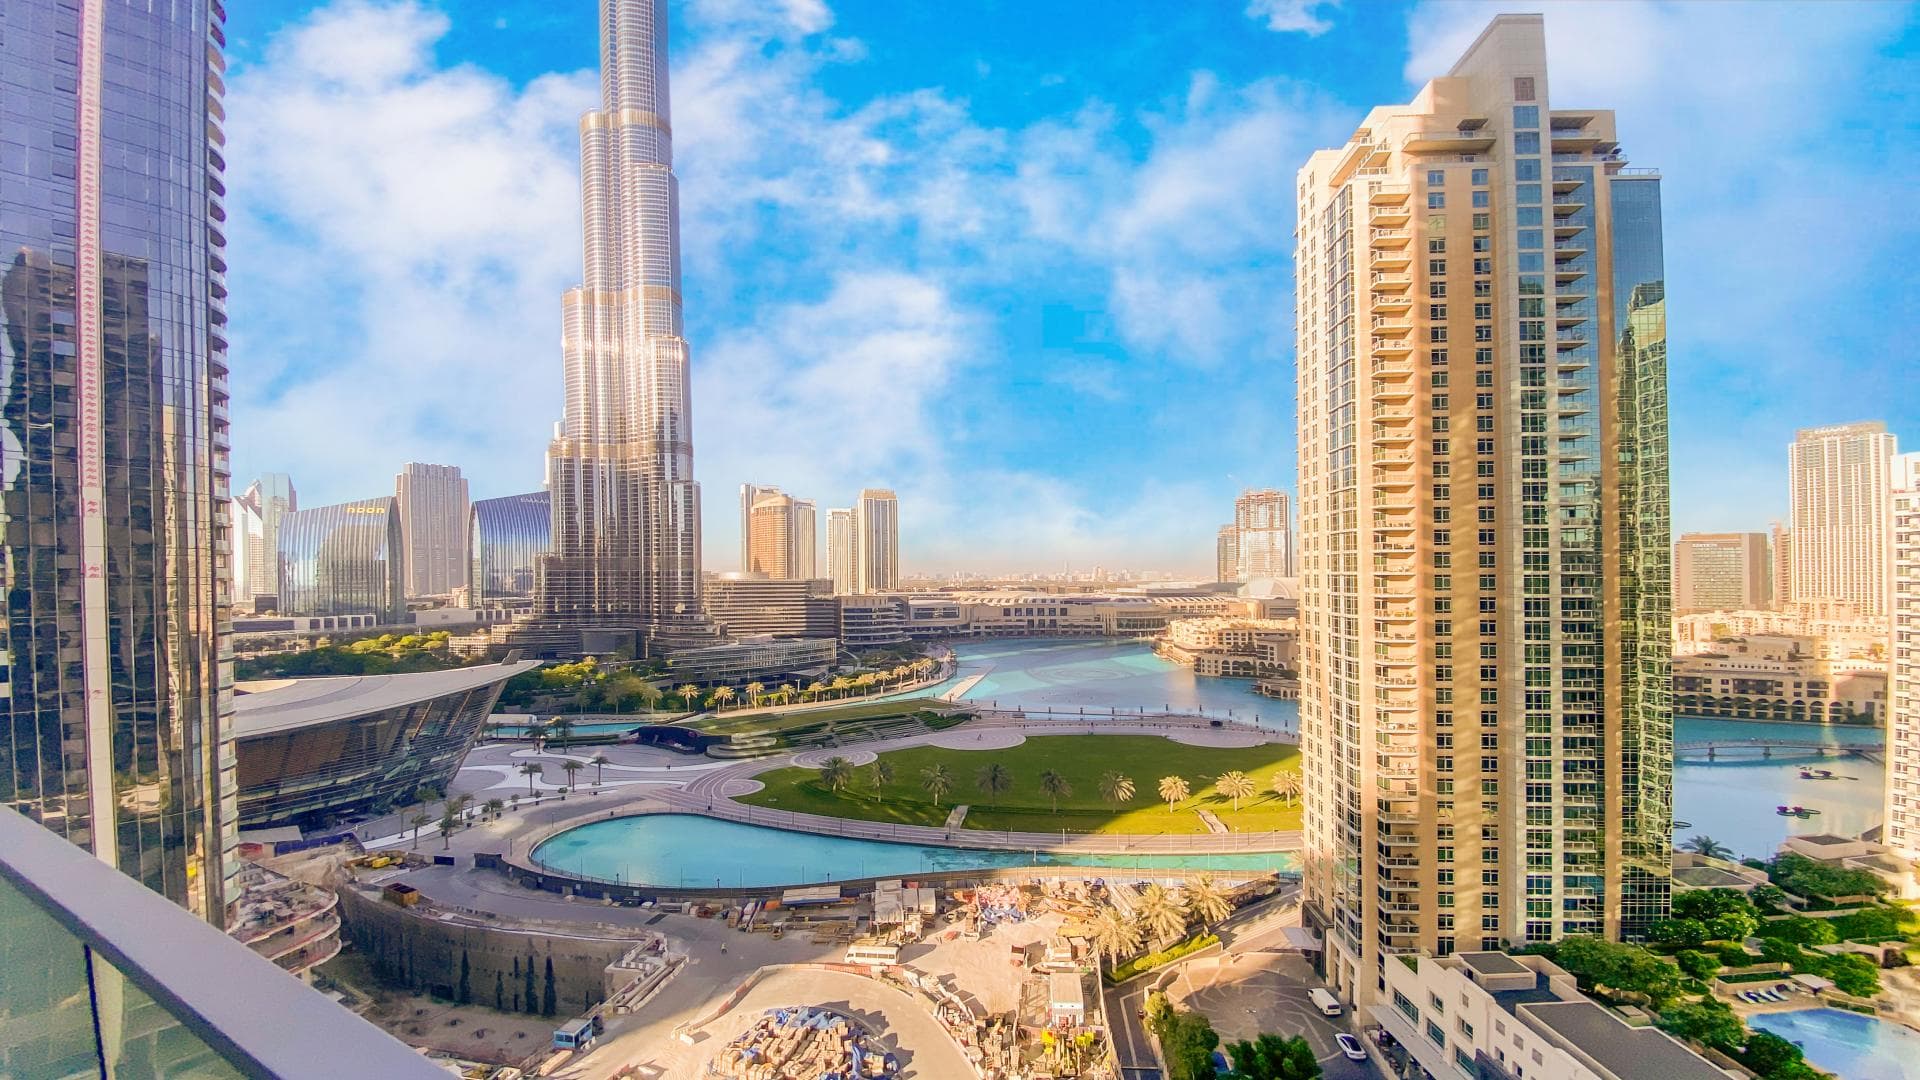 2 Bedroom Apartment For Rent Burj Khalifa Area Lp12882 26ad42529d13d600.jpg